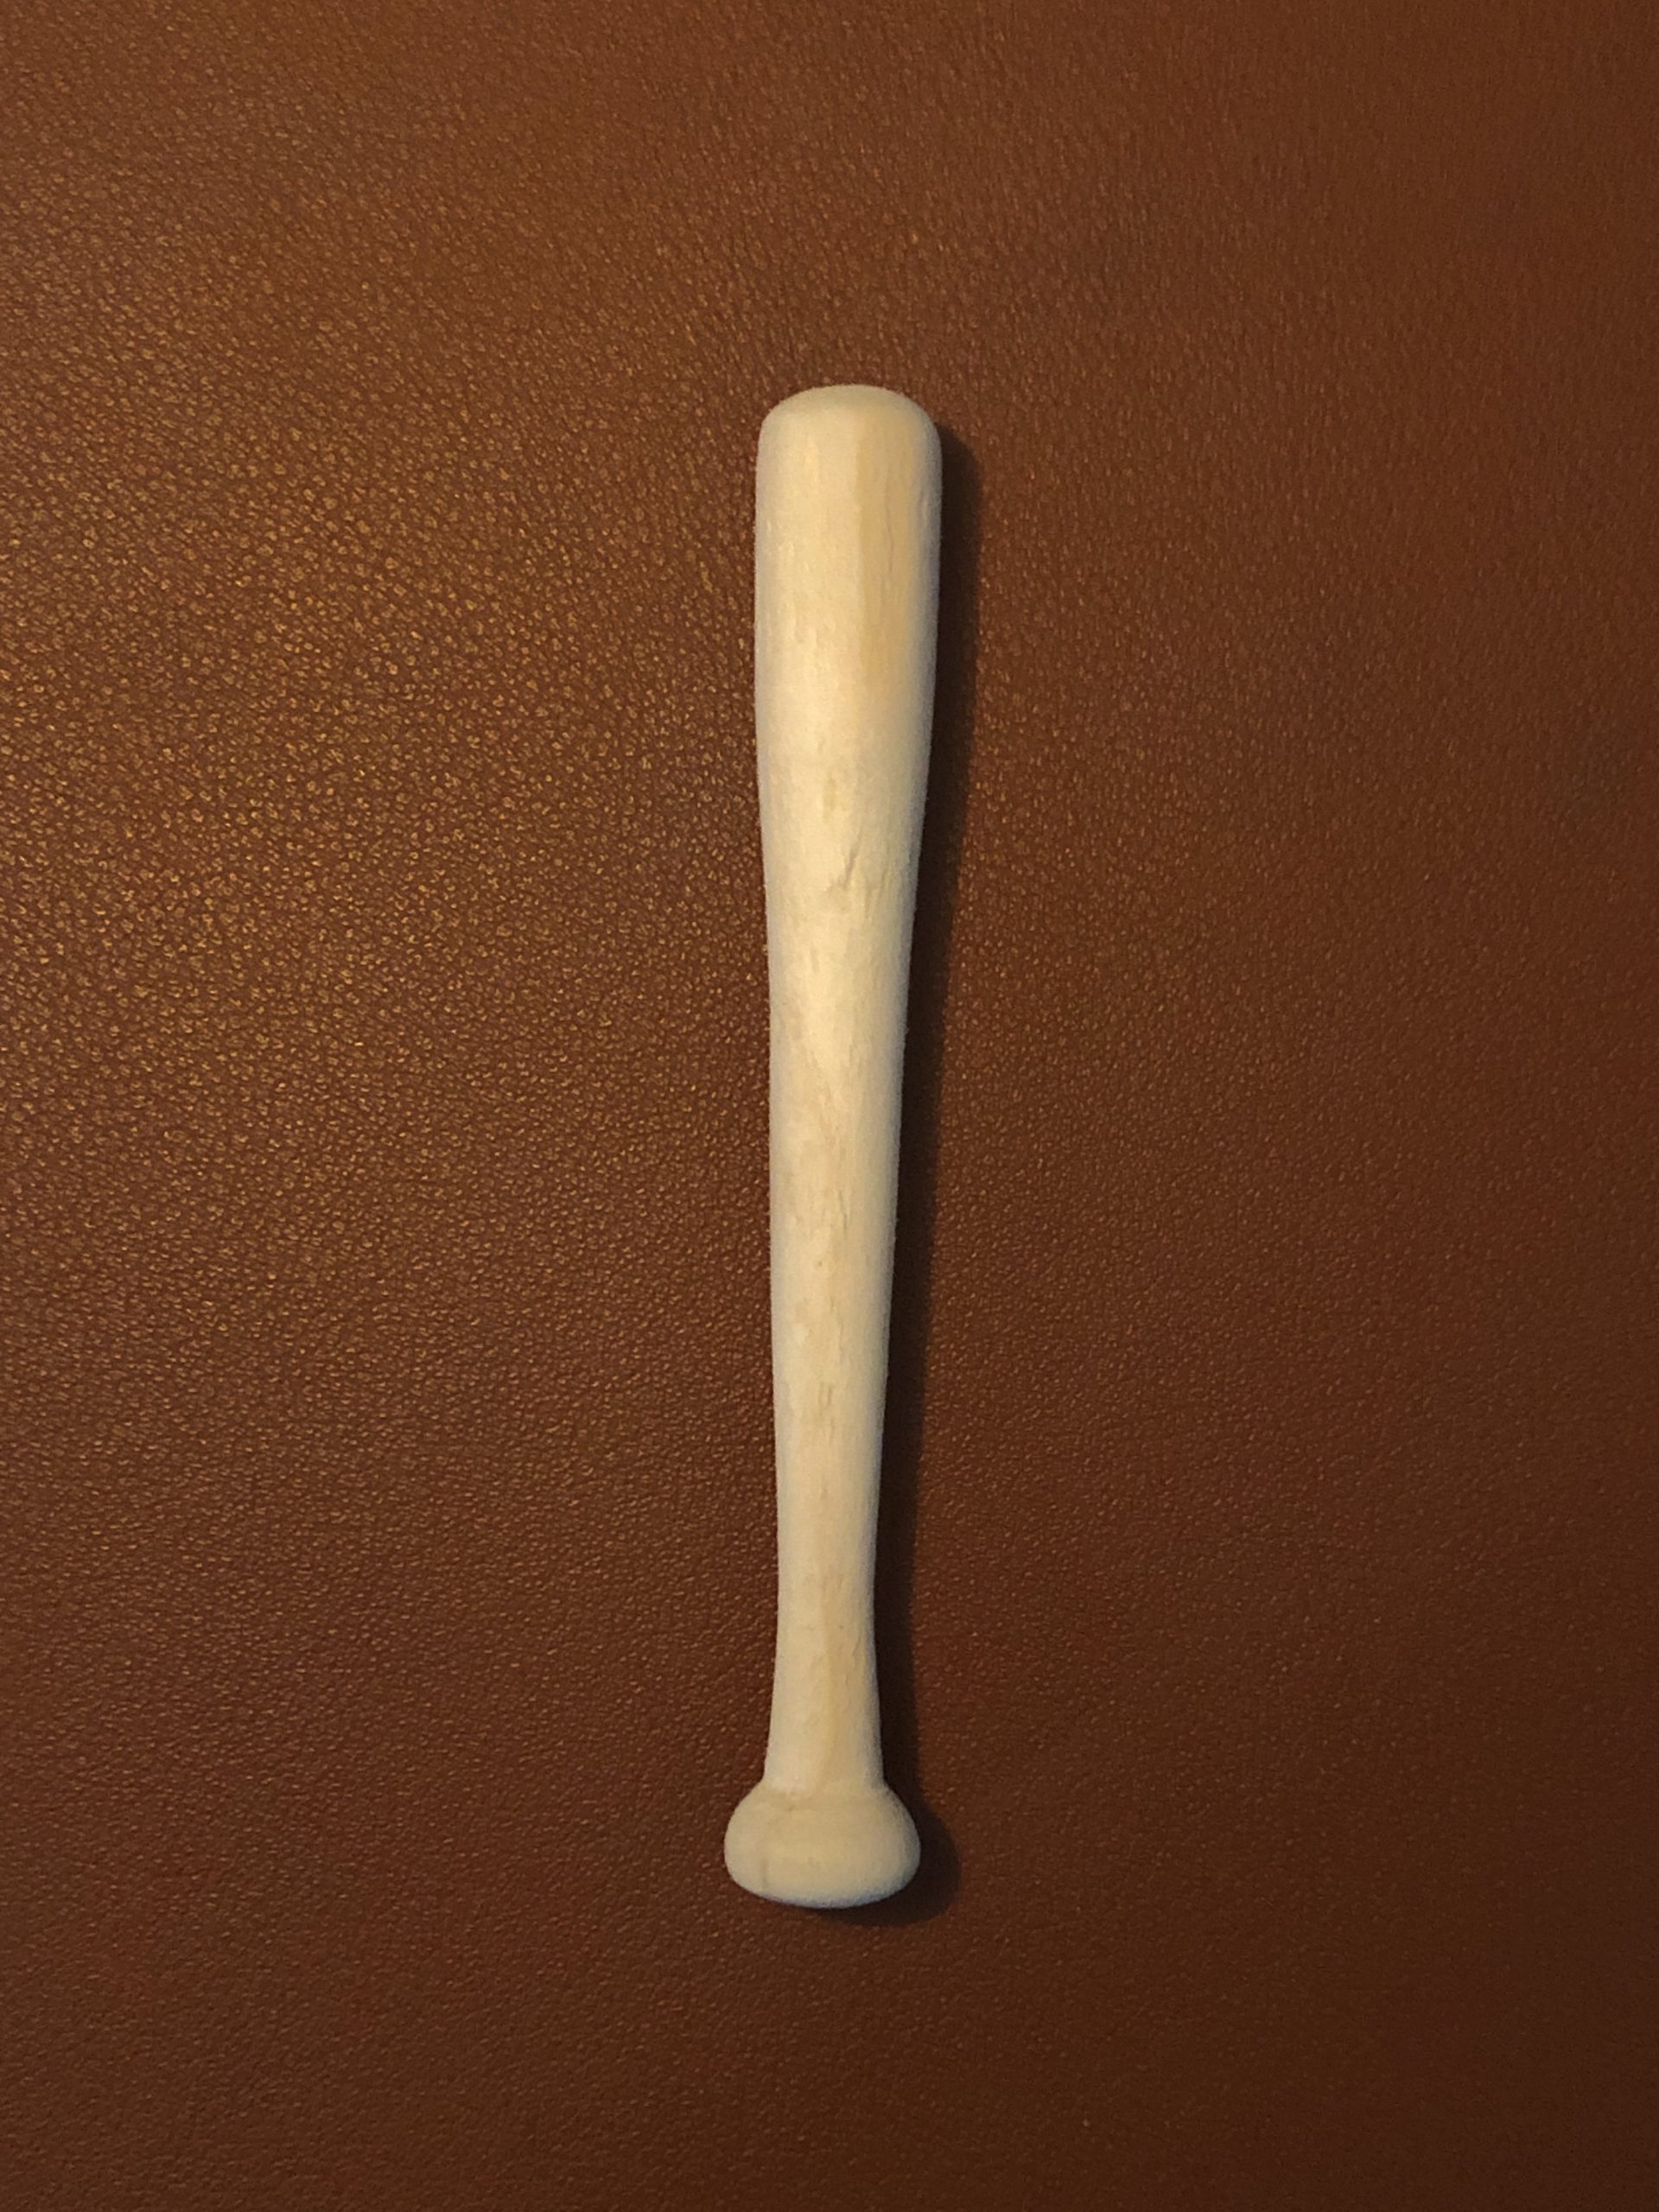 Mini baseball bat